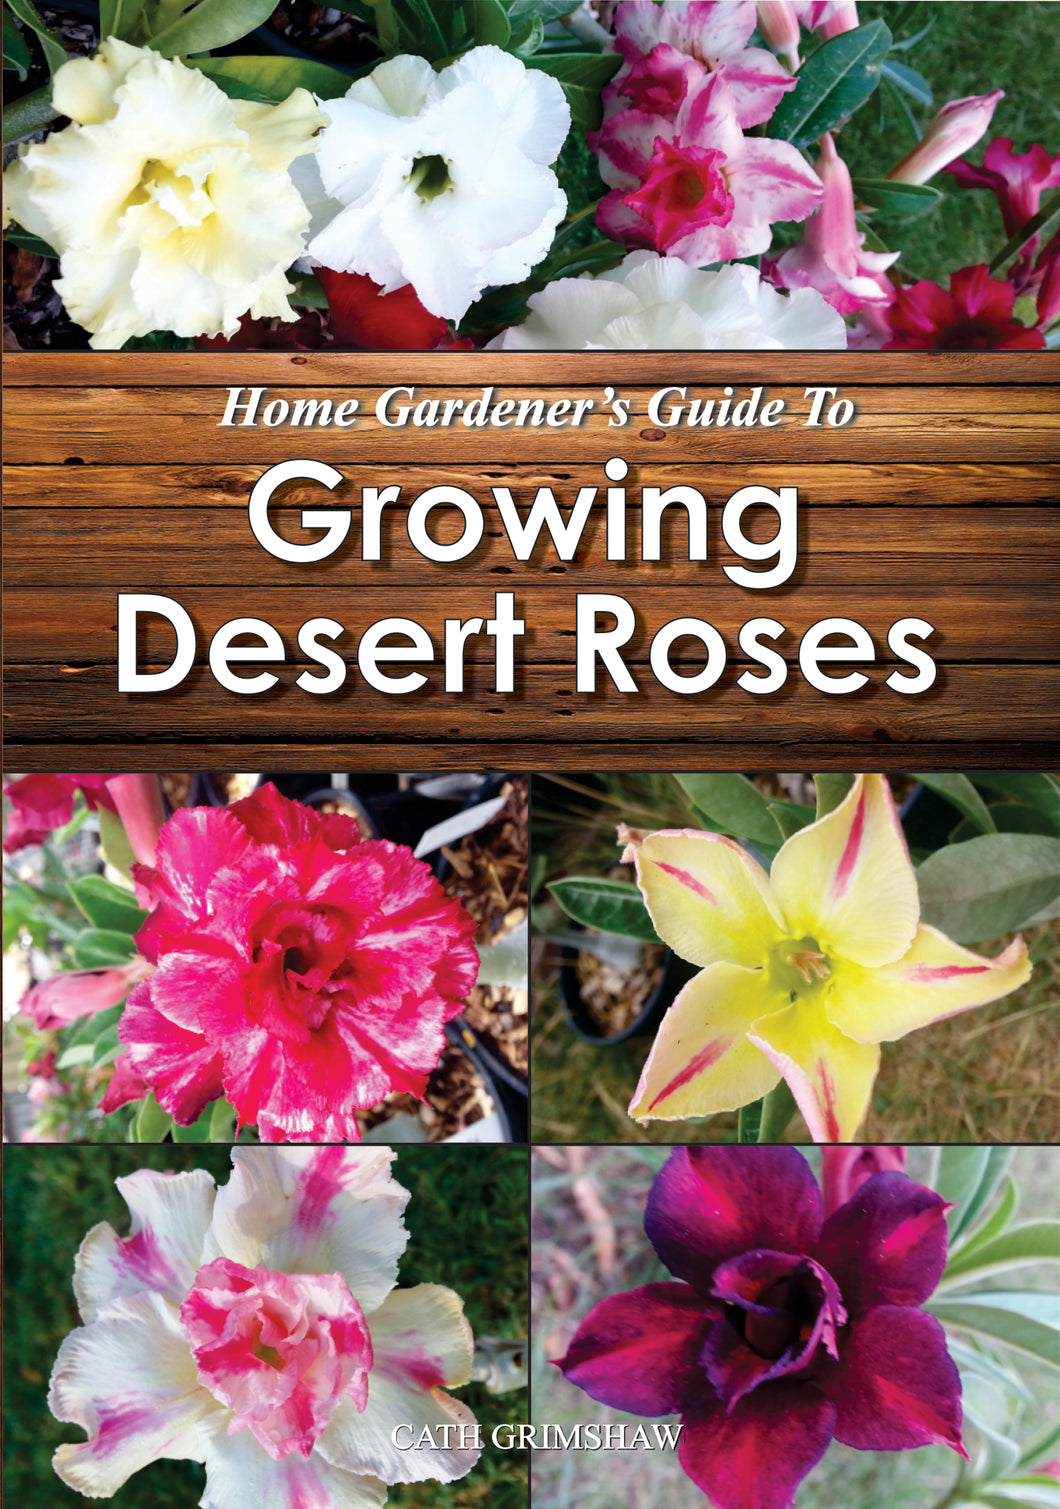 Home Gardener's Guide to Growing Desert Roses